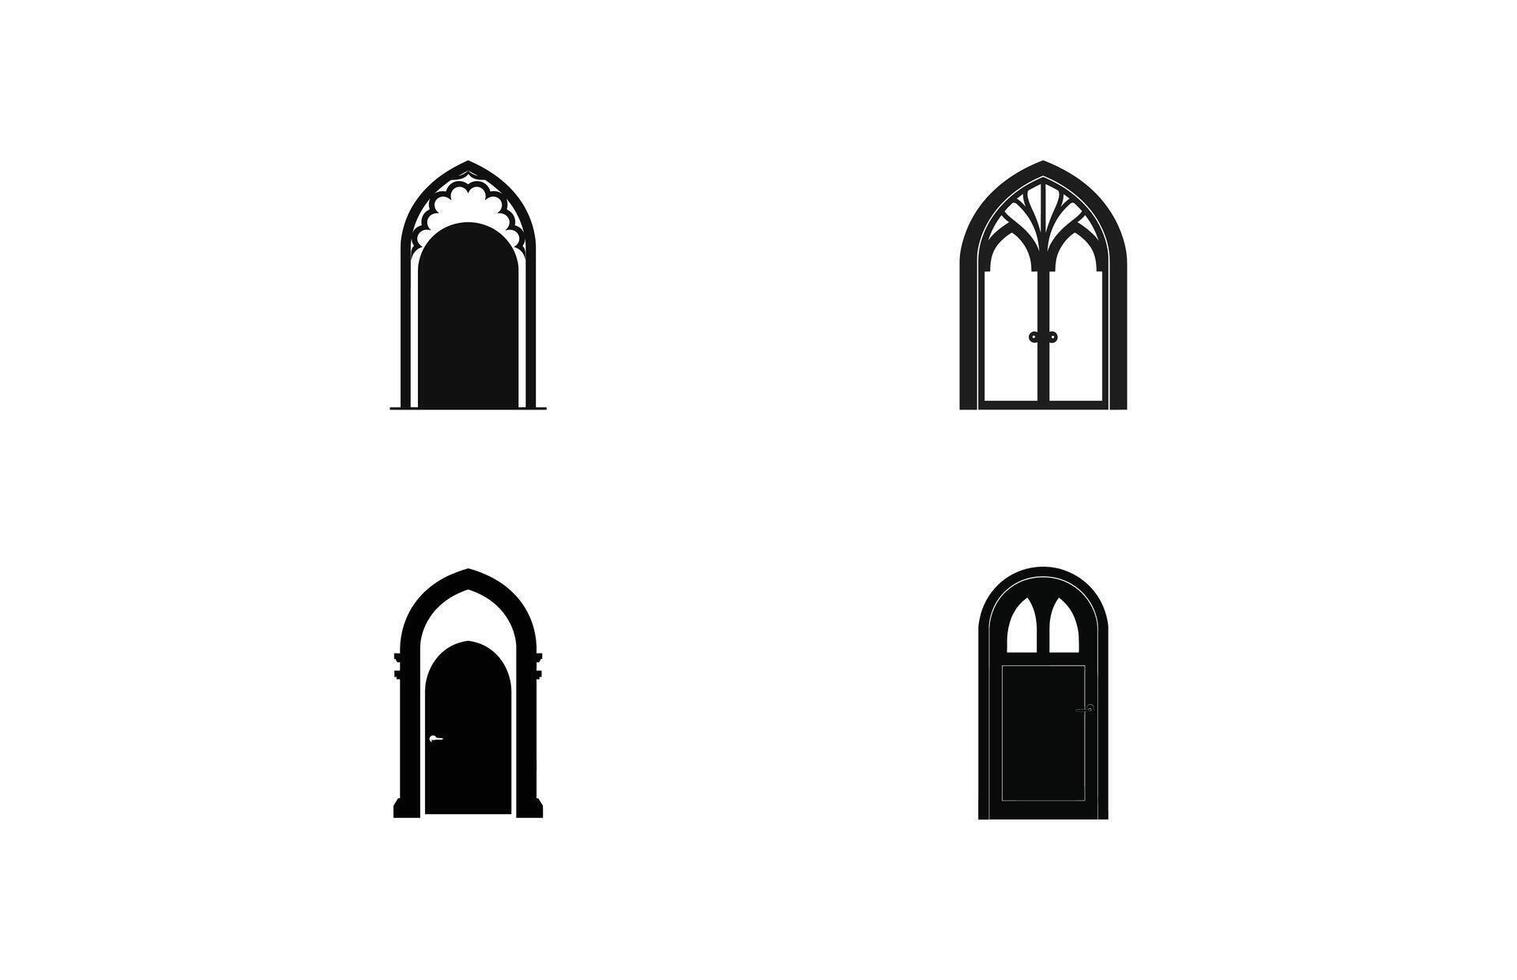 middeleeuws deur silhouetten, bouwkundig type van bogen vormen en vormen silhouetten vector